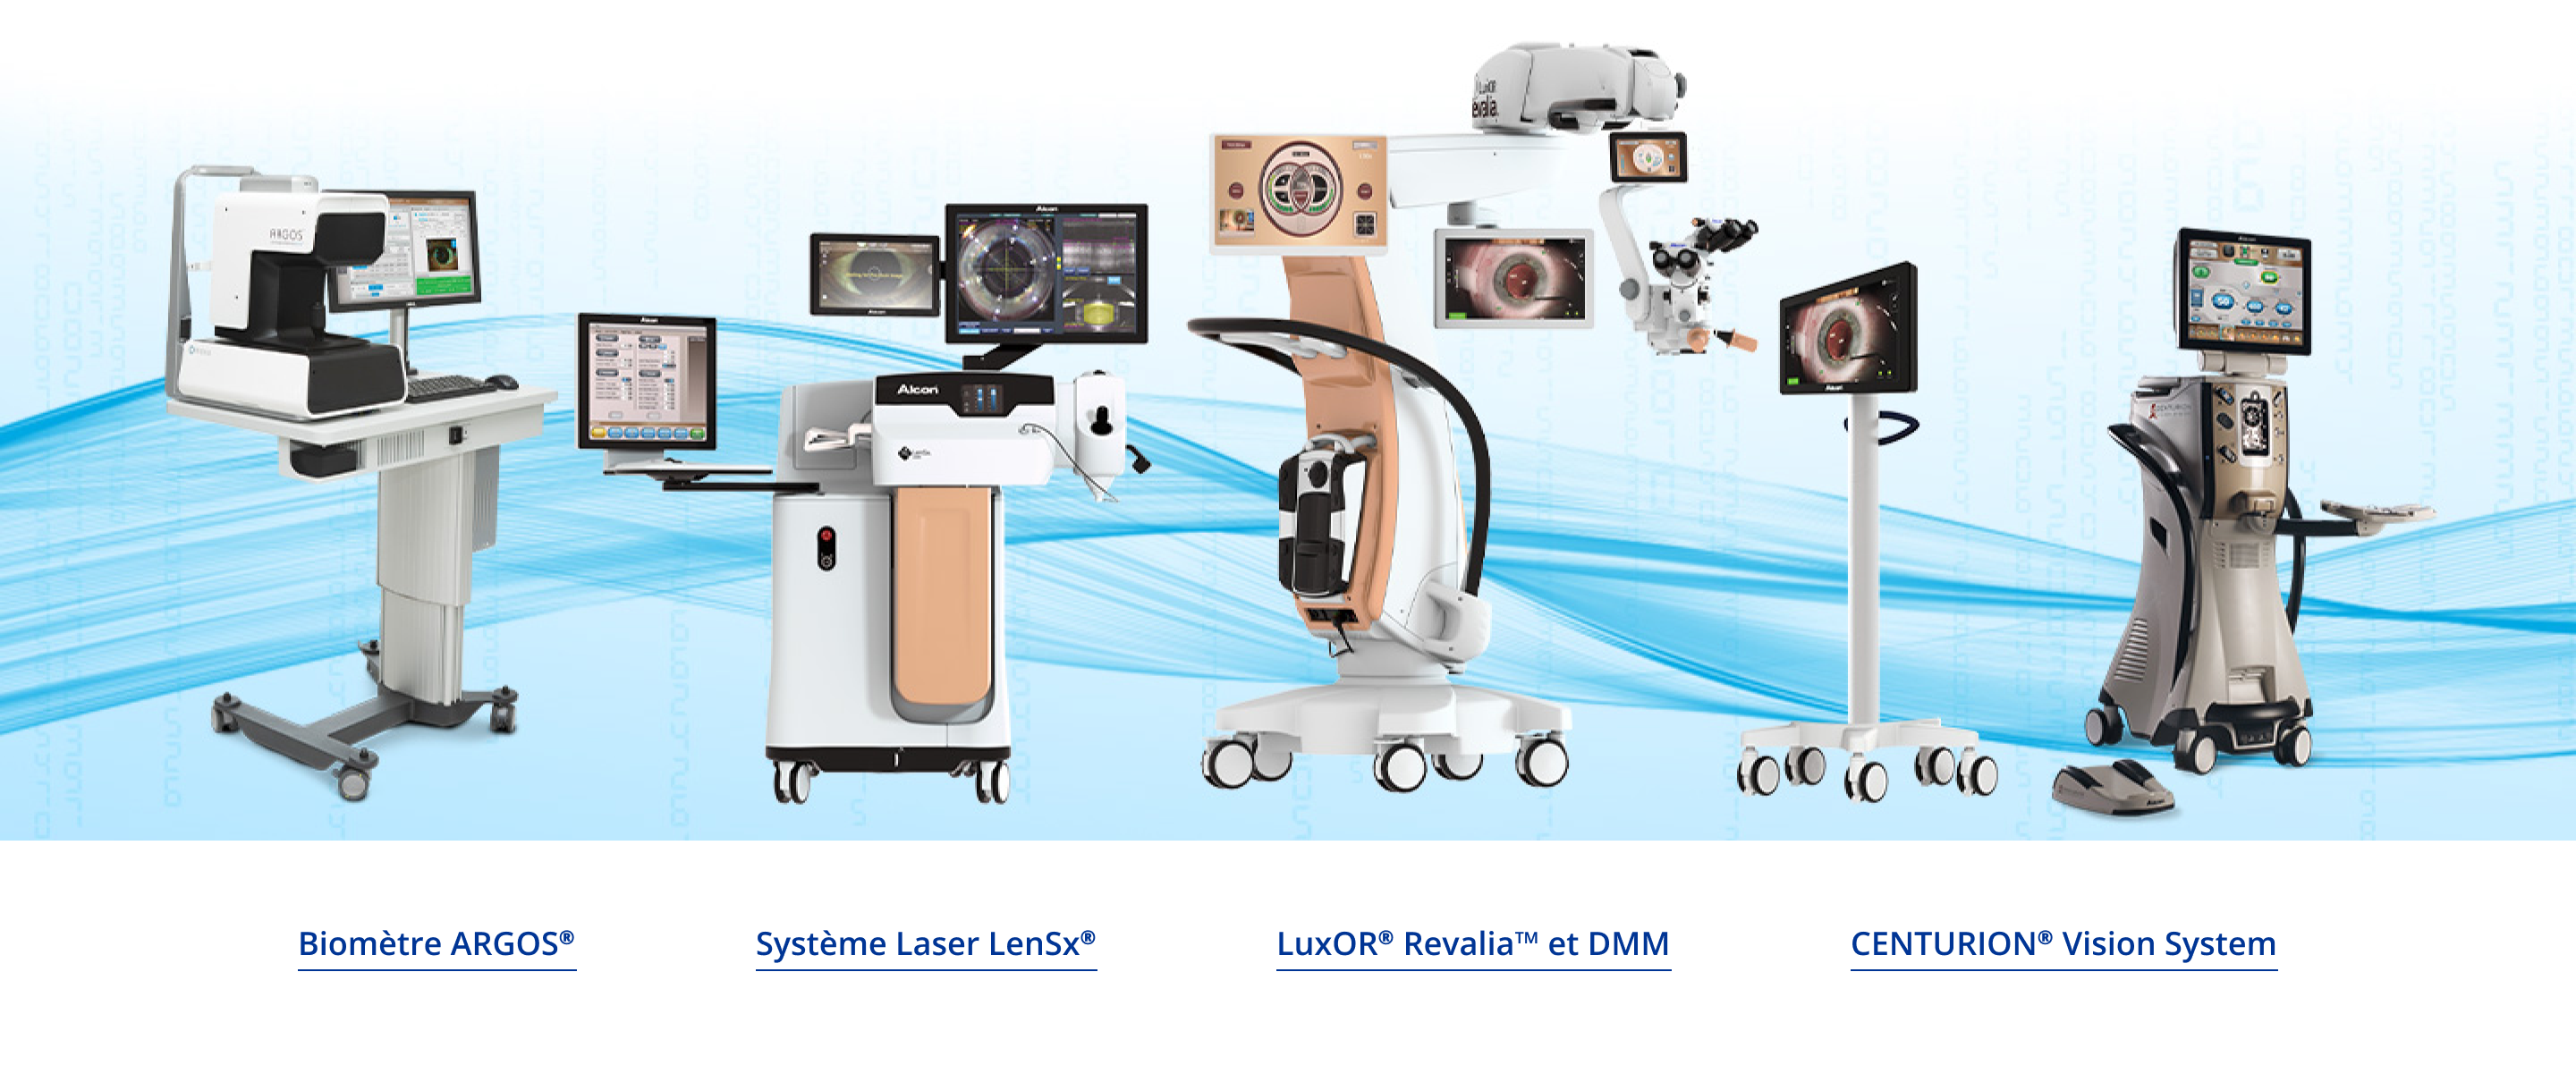 Image montrant différents dispositifs chirurgicaux fabriqués par Alcon. Le biomètre ARGOS, le système laser LenSx, le microscope ophtalmique LuxOR Revalia, le marqueur numérique Verion, le système de vision Centurion.